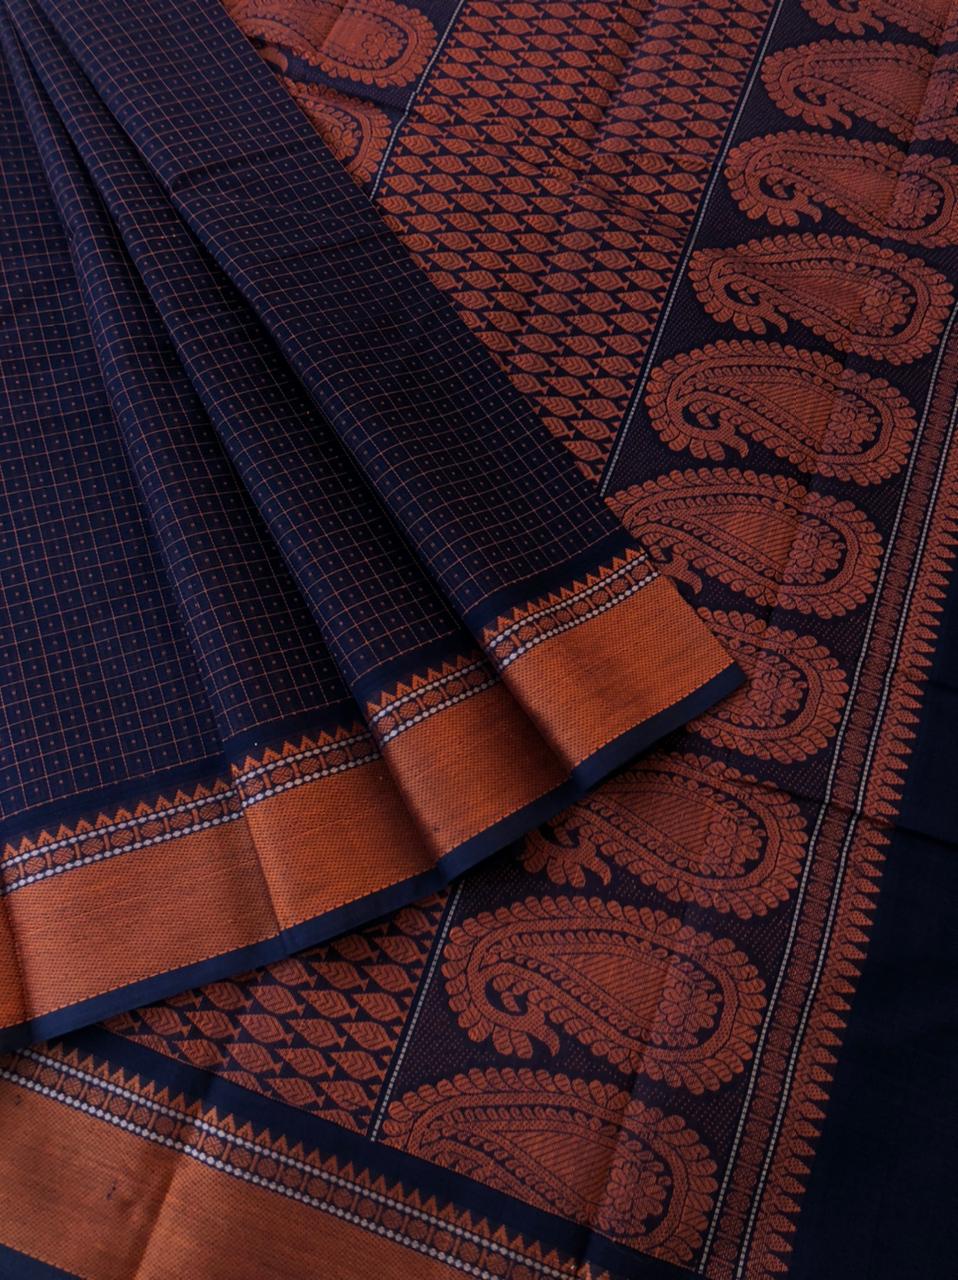 Mangalavastaram - mid night blue black Lakshadeepam